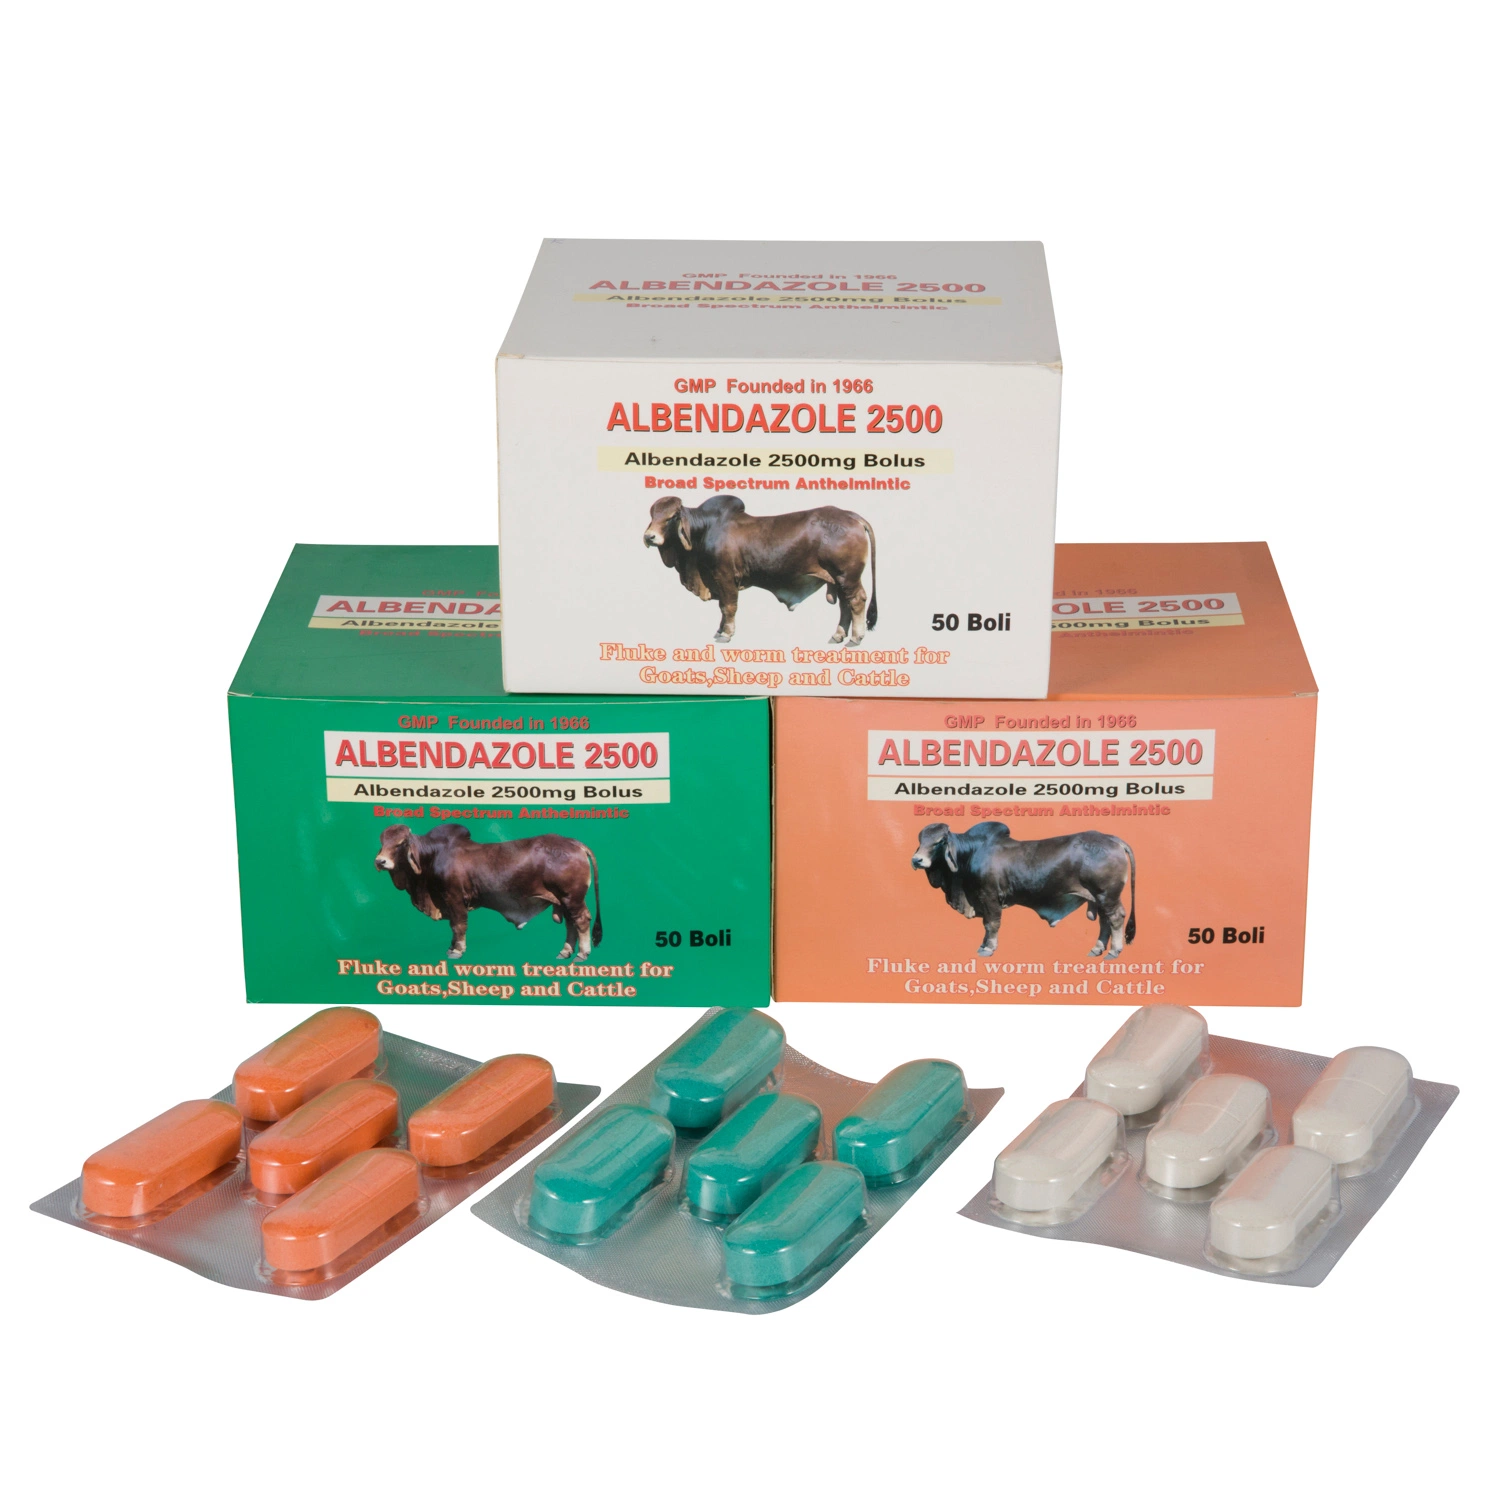 Albendazole Bolus 2500mg Veterinary Tablets No. 2